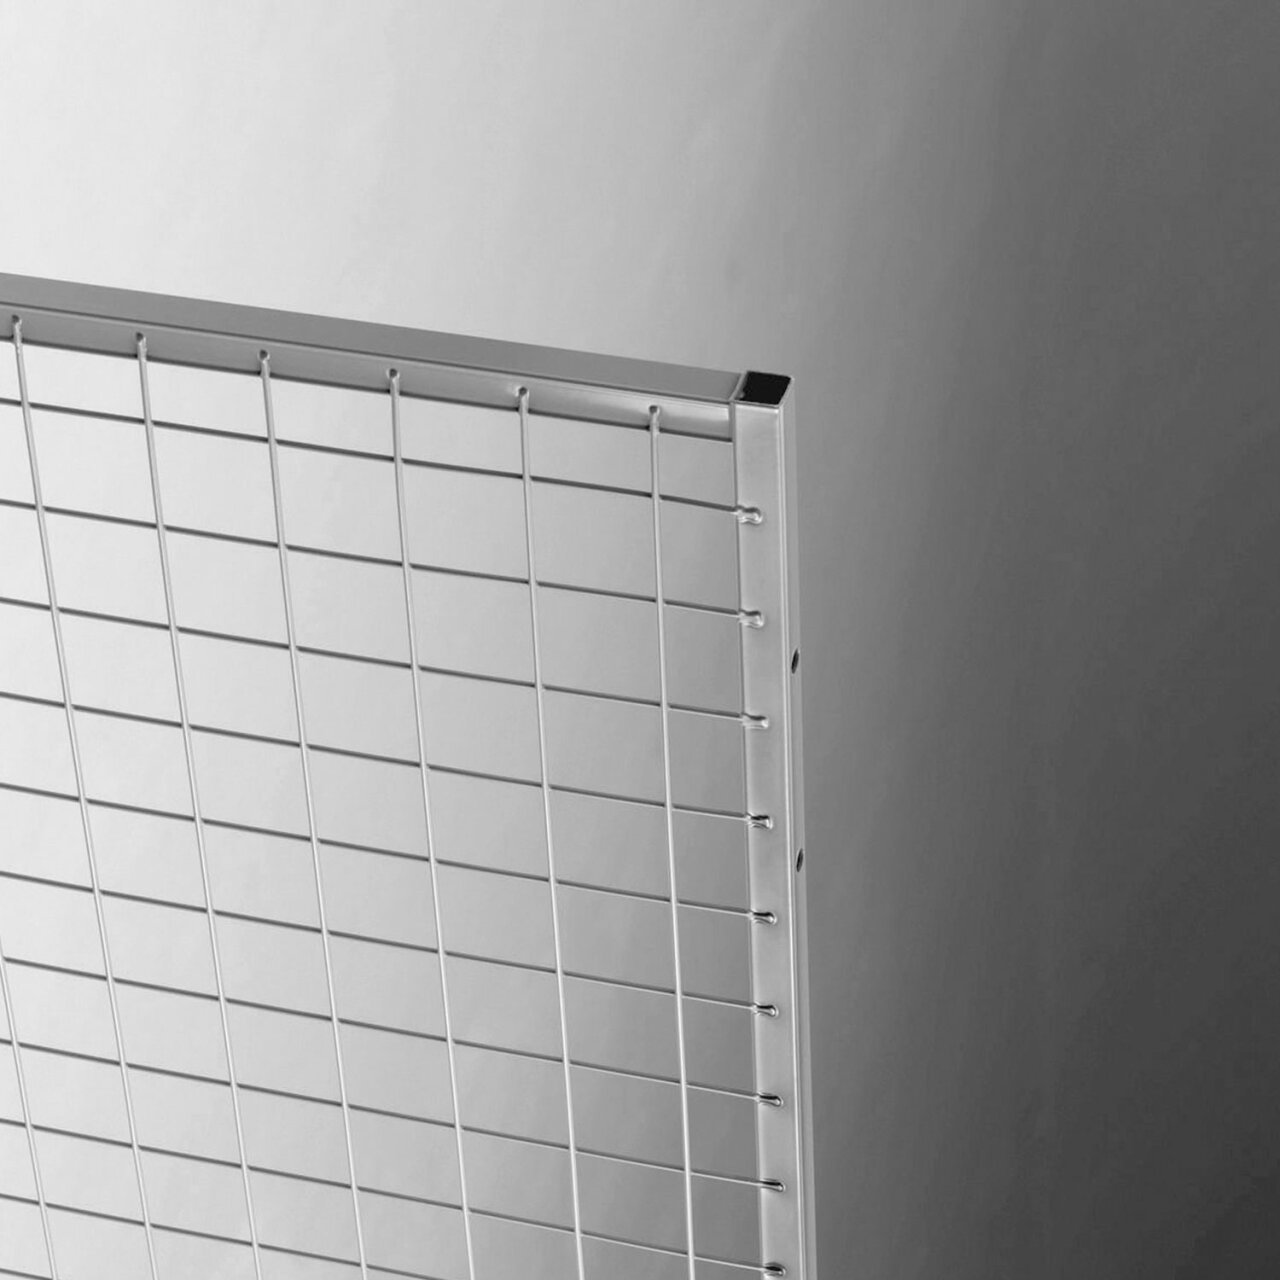 Mesh partitioning - single mesh panel detail.